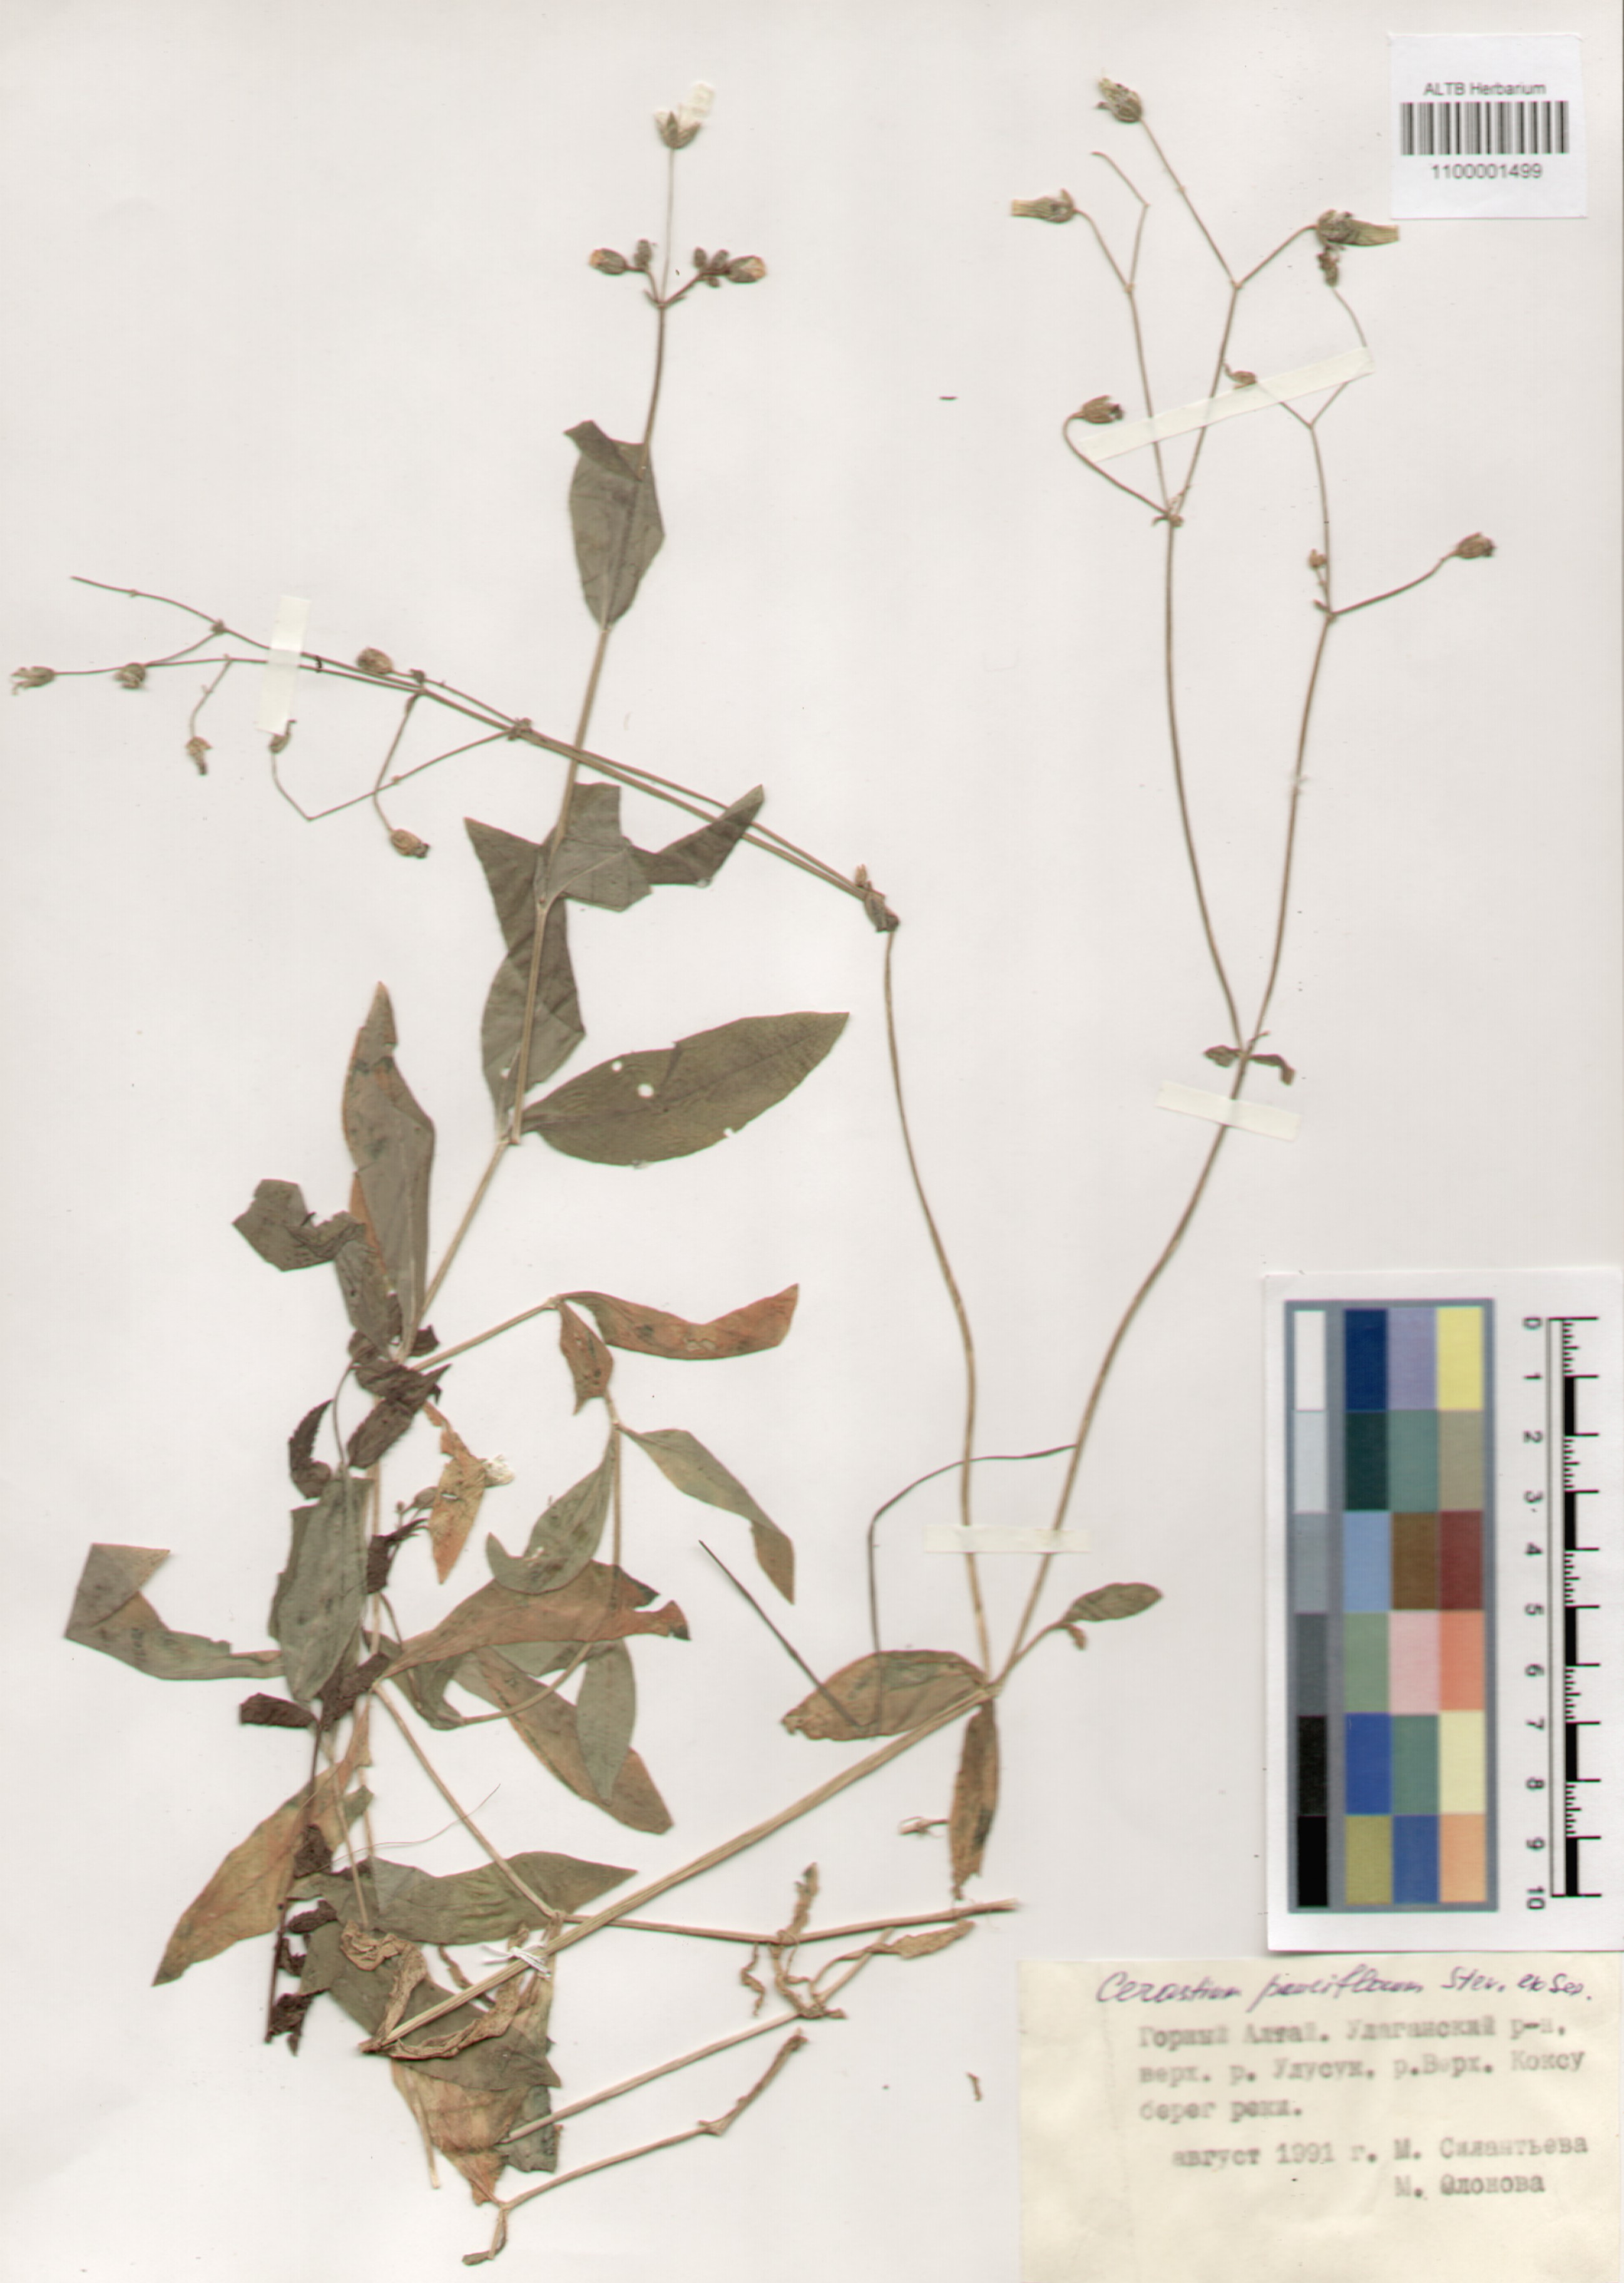 Caryophyllaceae,Cerastium pauciflorum Stev.